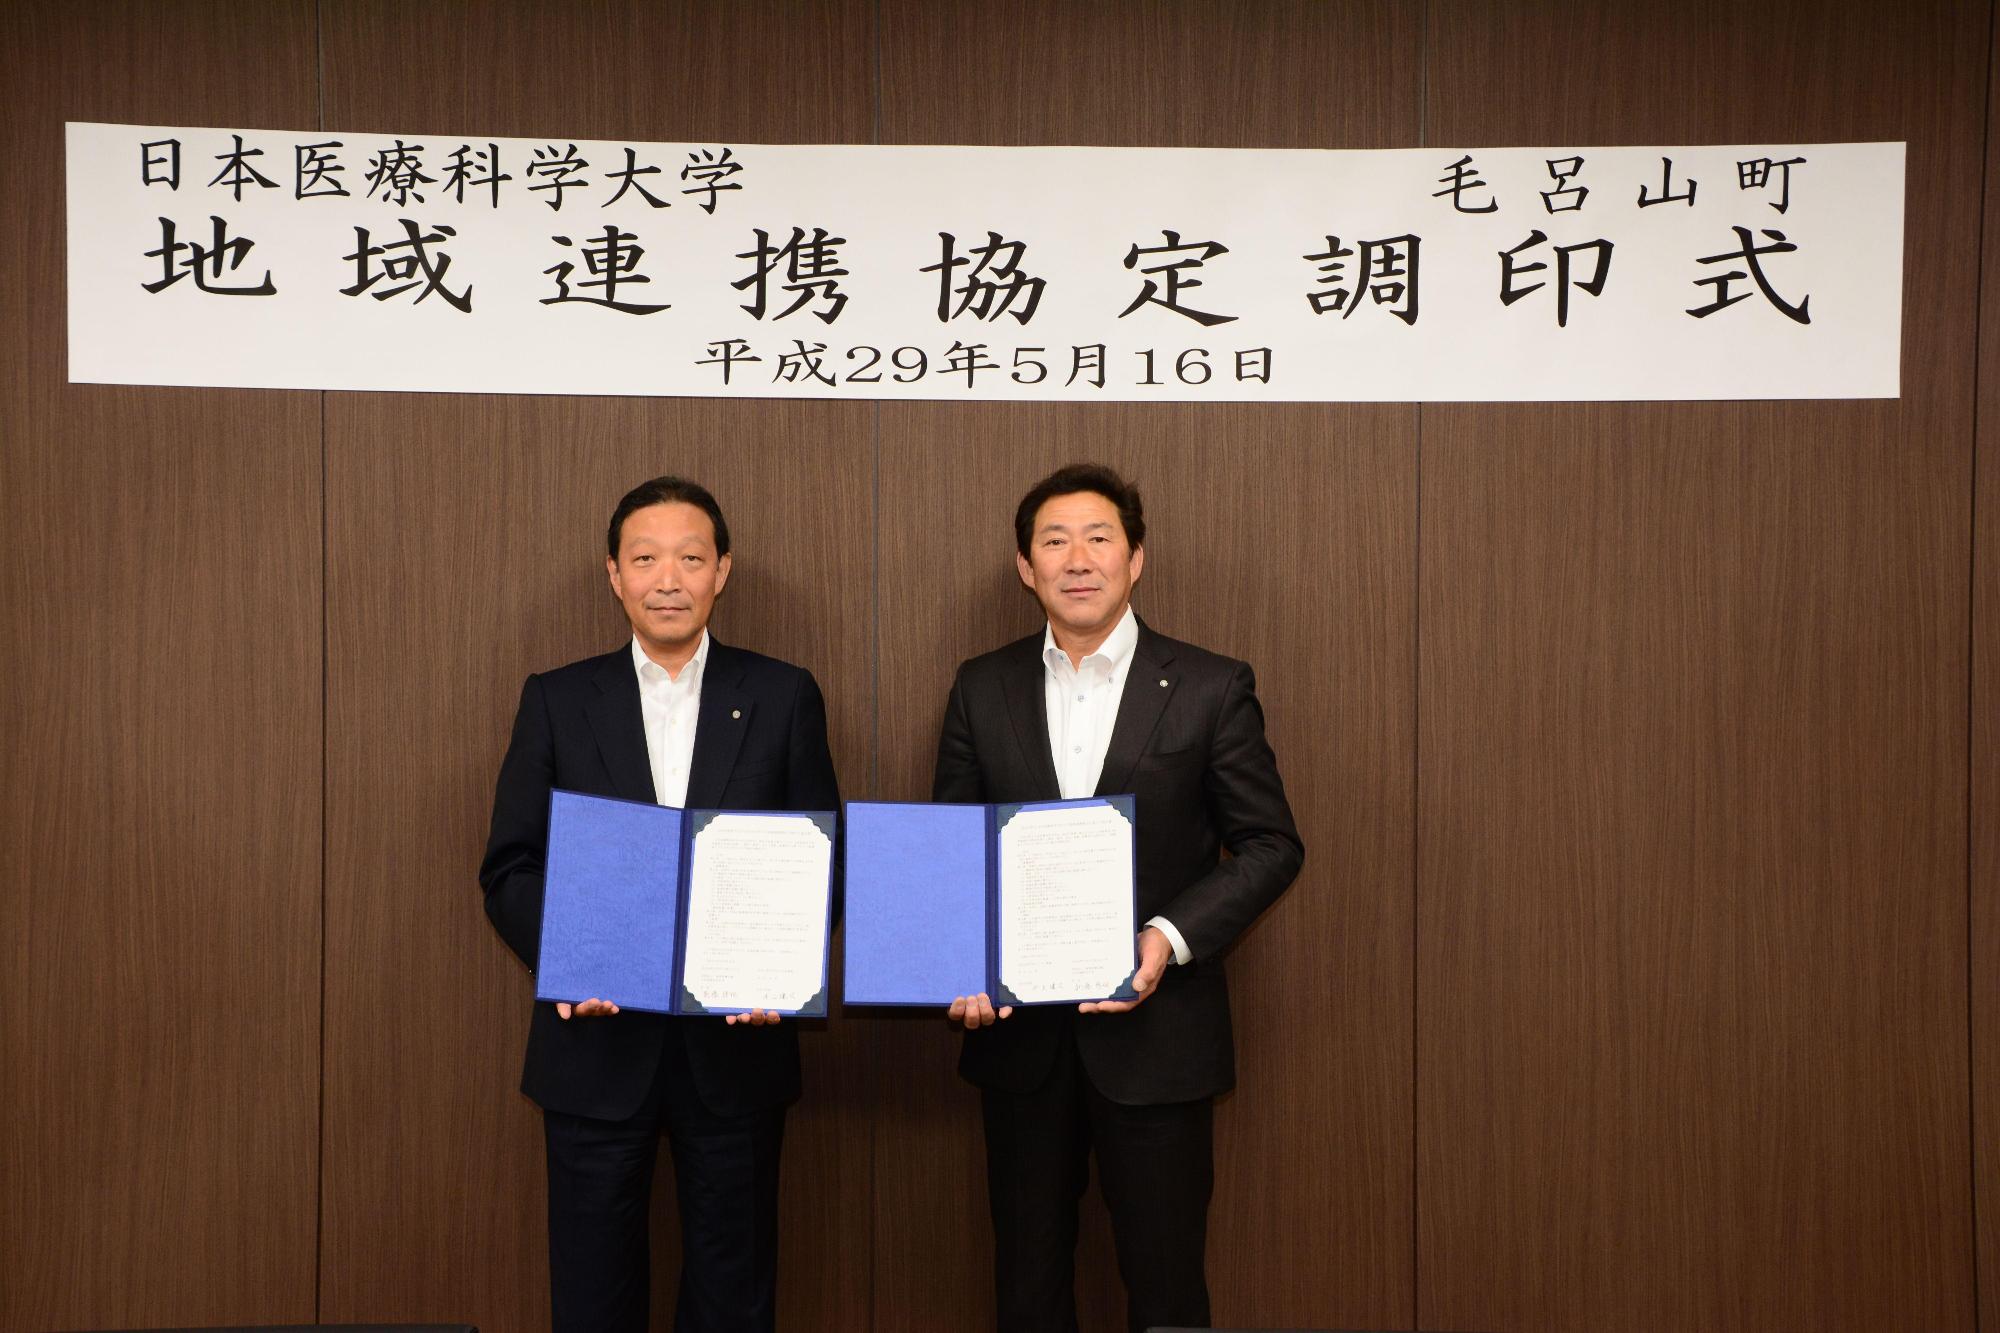 「日本医療科学大学地域連携協定調印式」と書かれた幕の前で町長と男性が並んで立ち、協定書を持って写っている写真